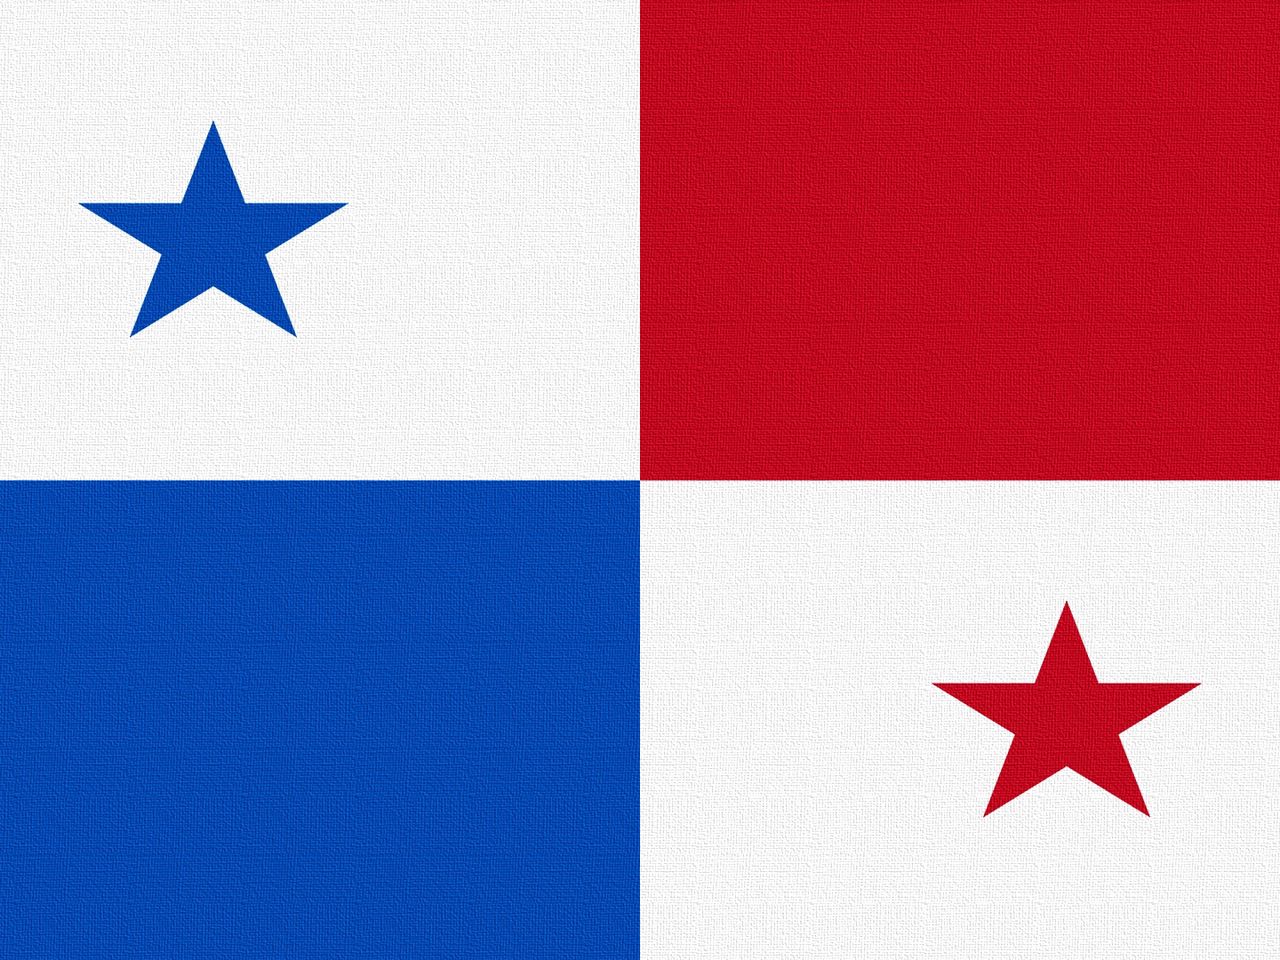 Флаги со звездами какие. Панама Страна флаг. Флаг панамы. Флаг провинции Эррера Панама. Флаг синий белый красный со звездой.